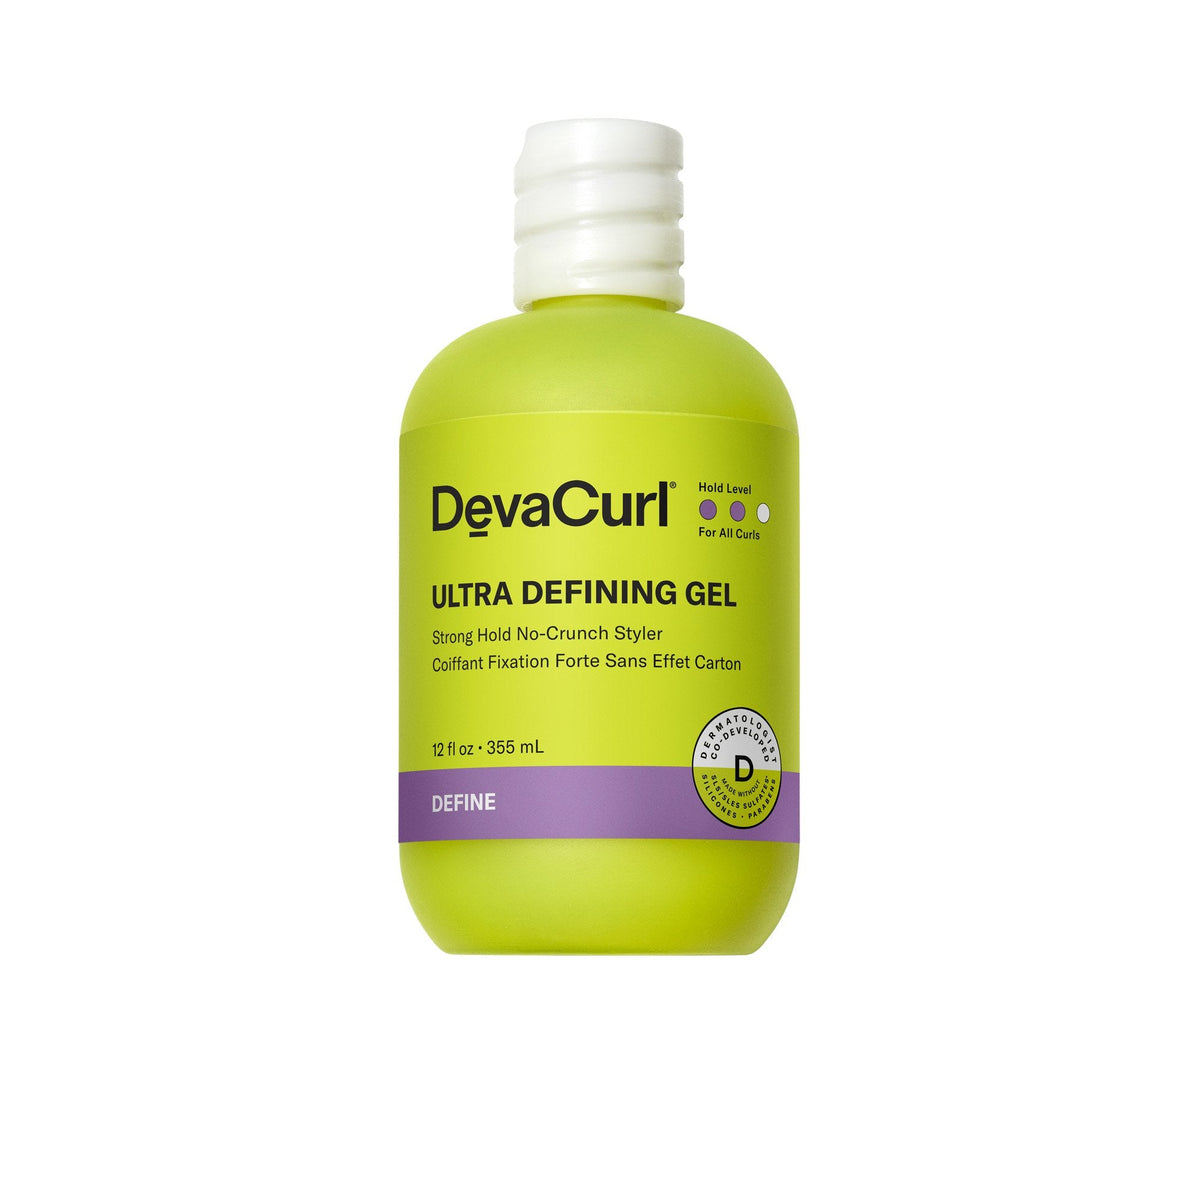 DevaCurl Ultra Defining Gel - 12oz - ProCare Outlet by Deva Curl